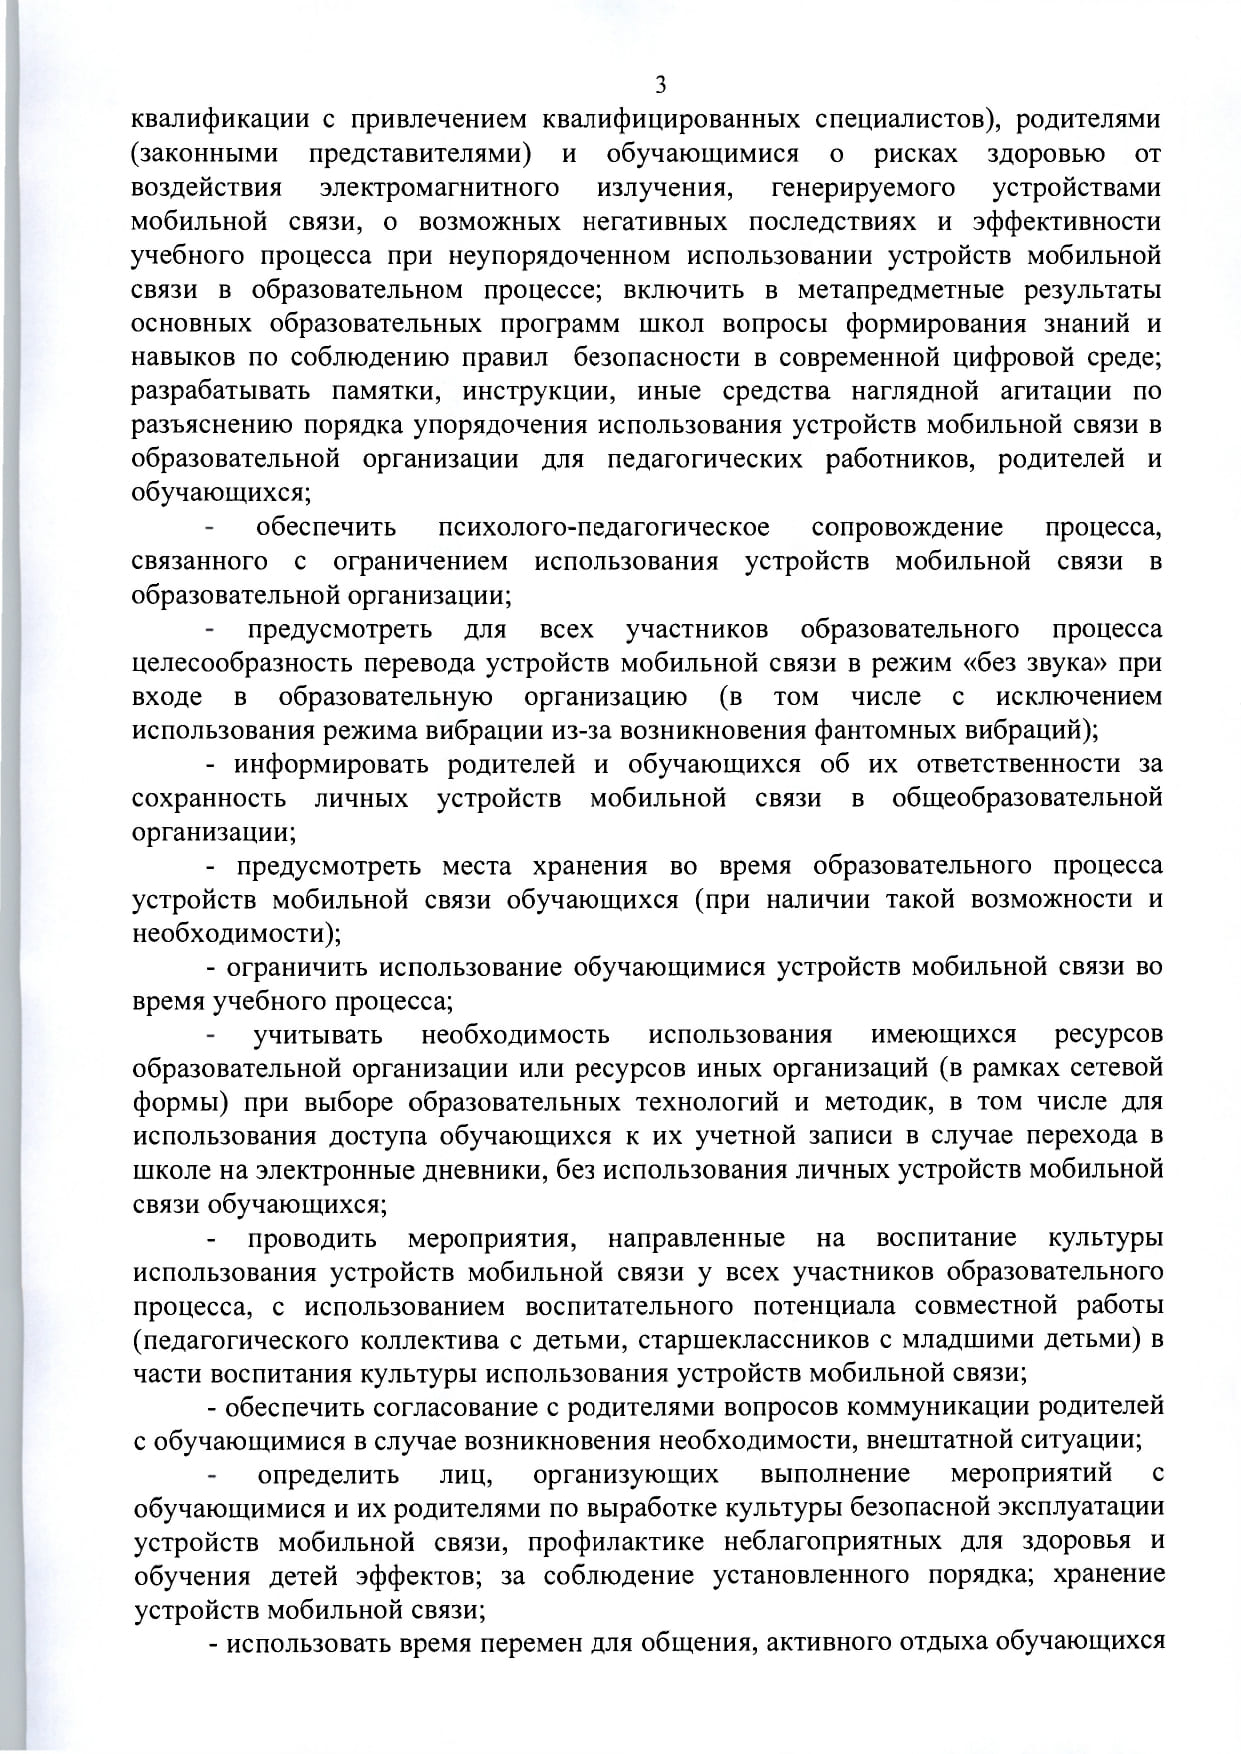 mr-telefony-v-obrazovatelnykh-org- 1  page-0005